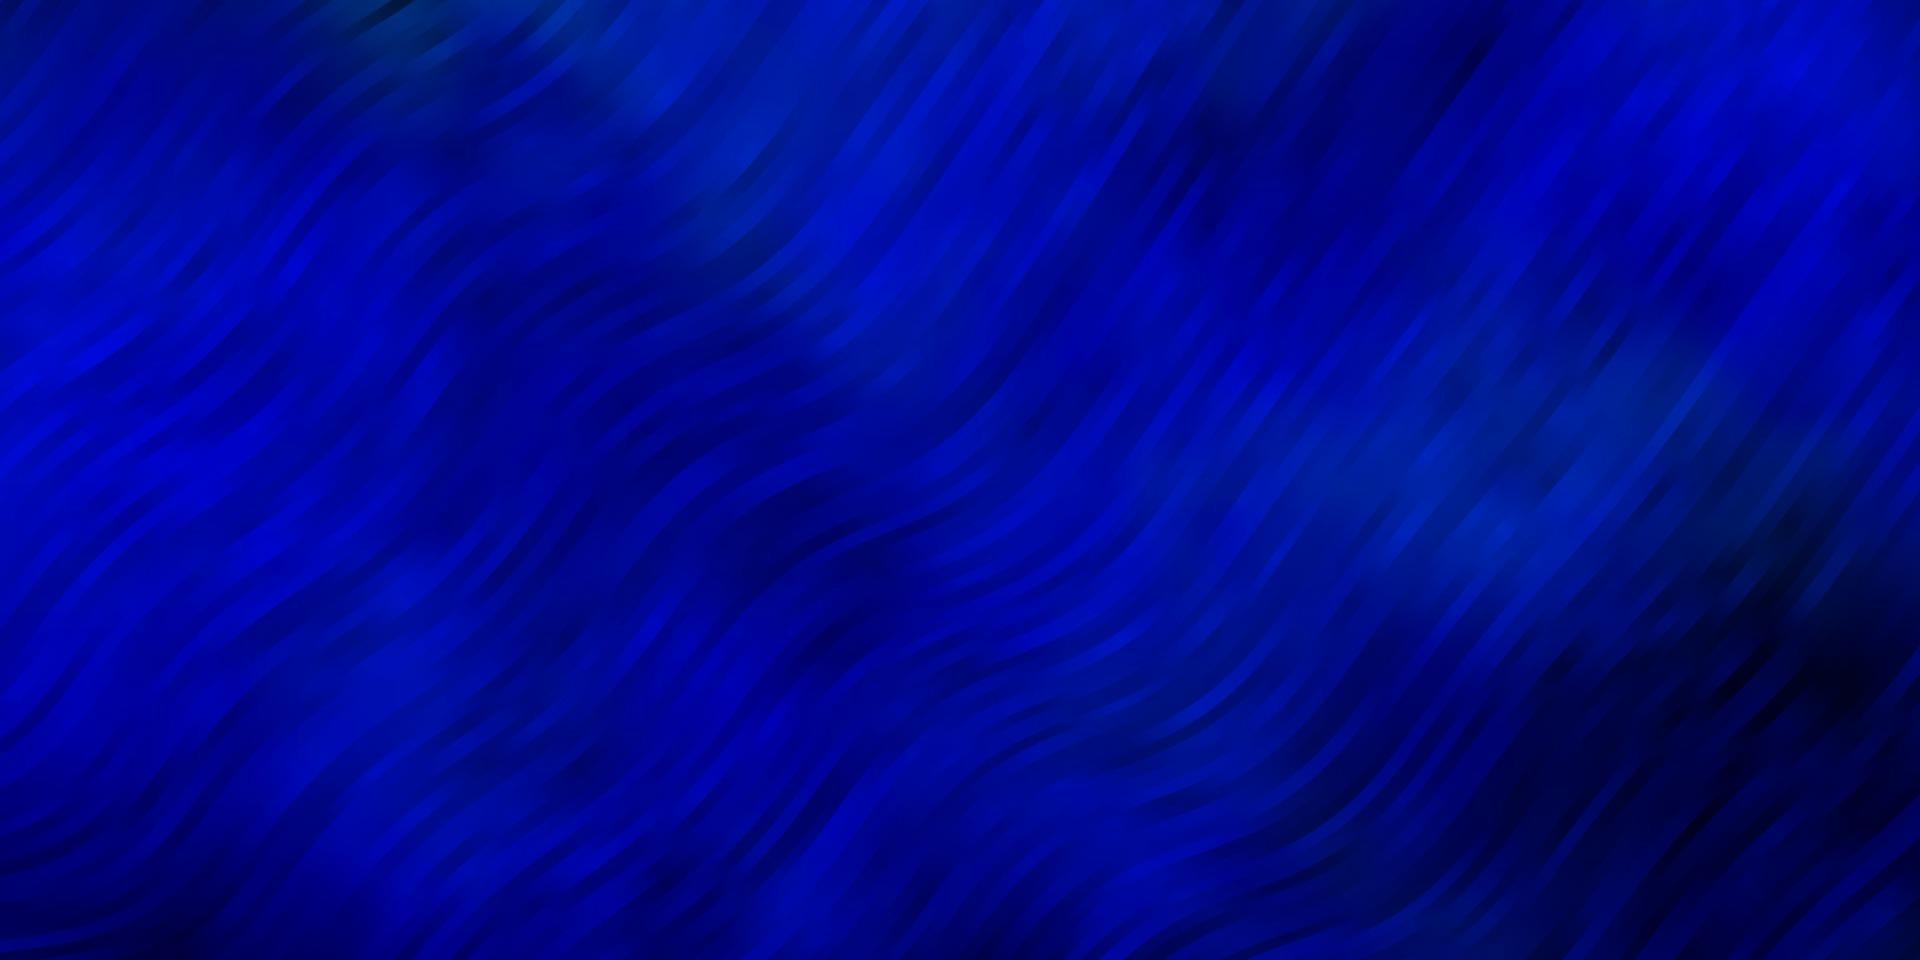 ljusblå vektor mönster med böjda linjer.